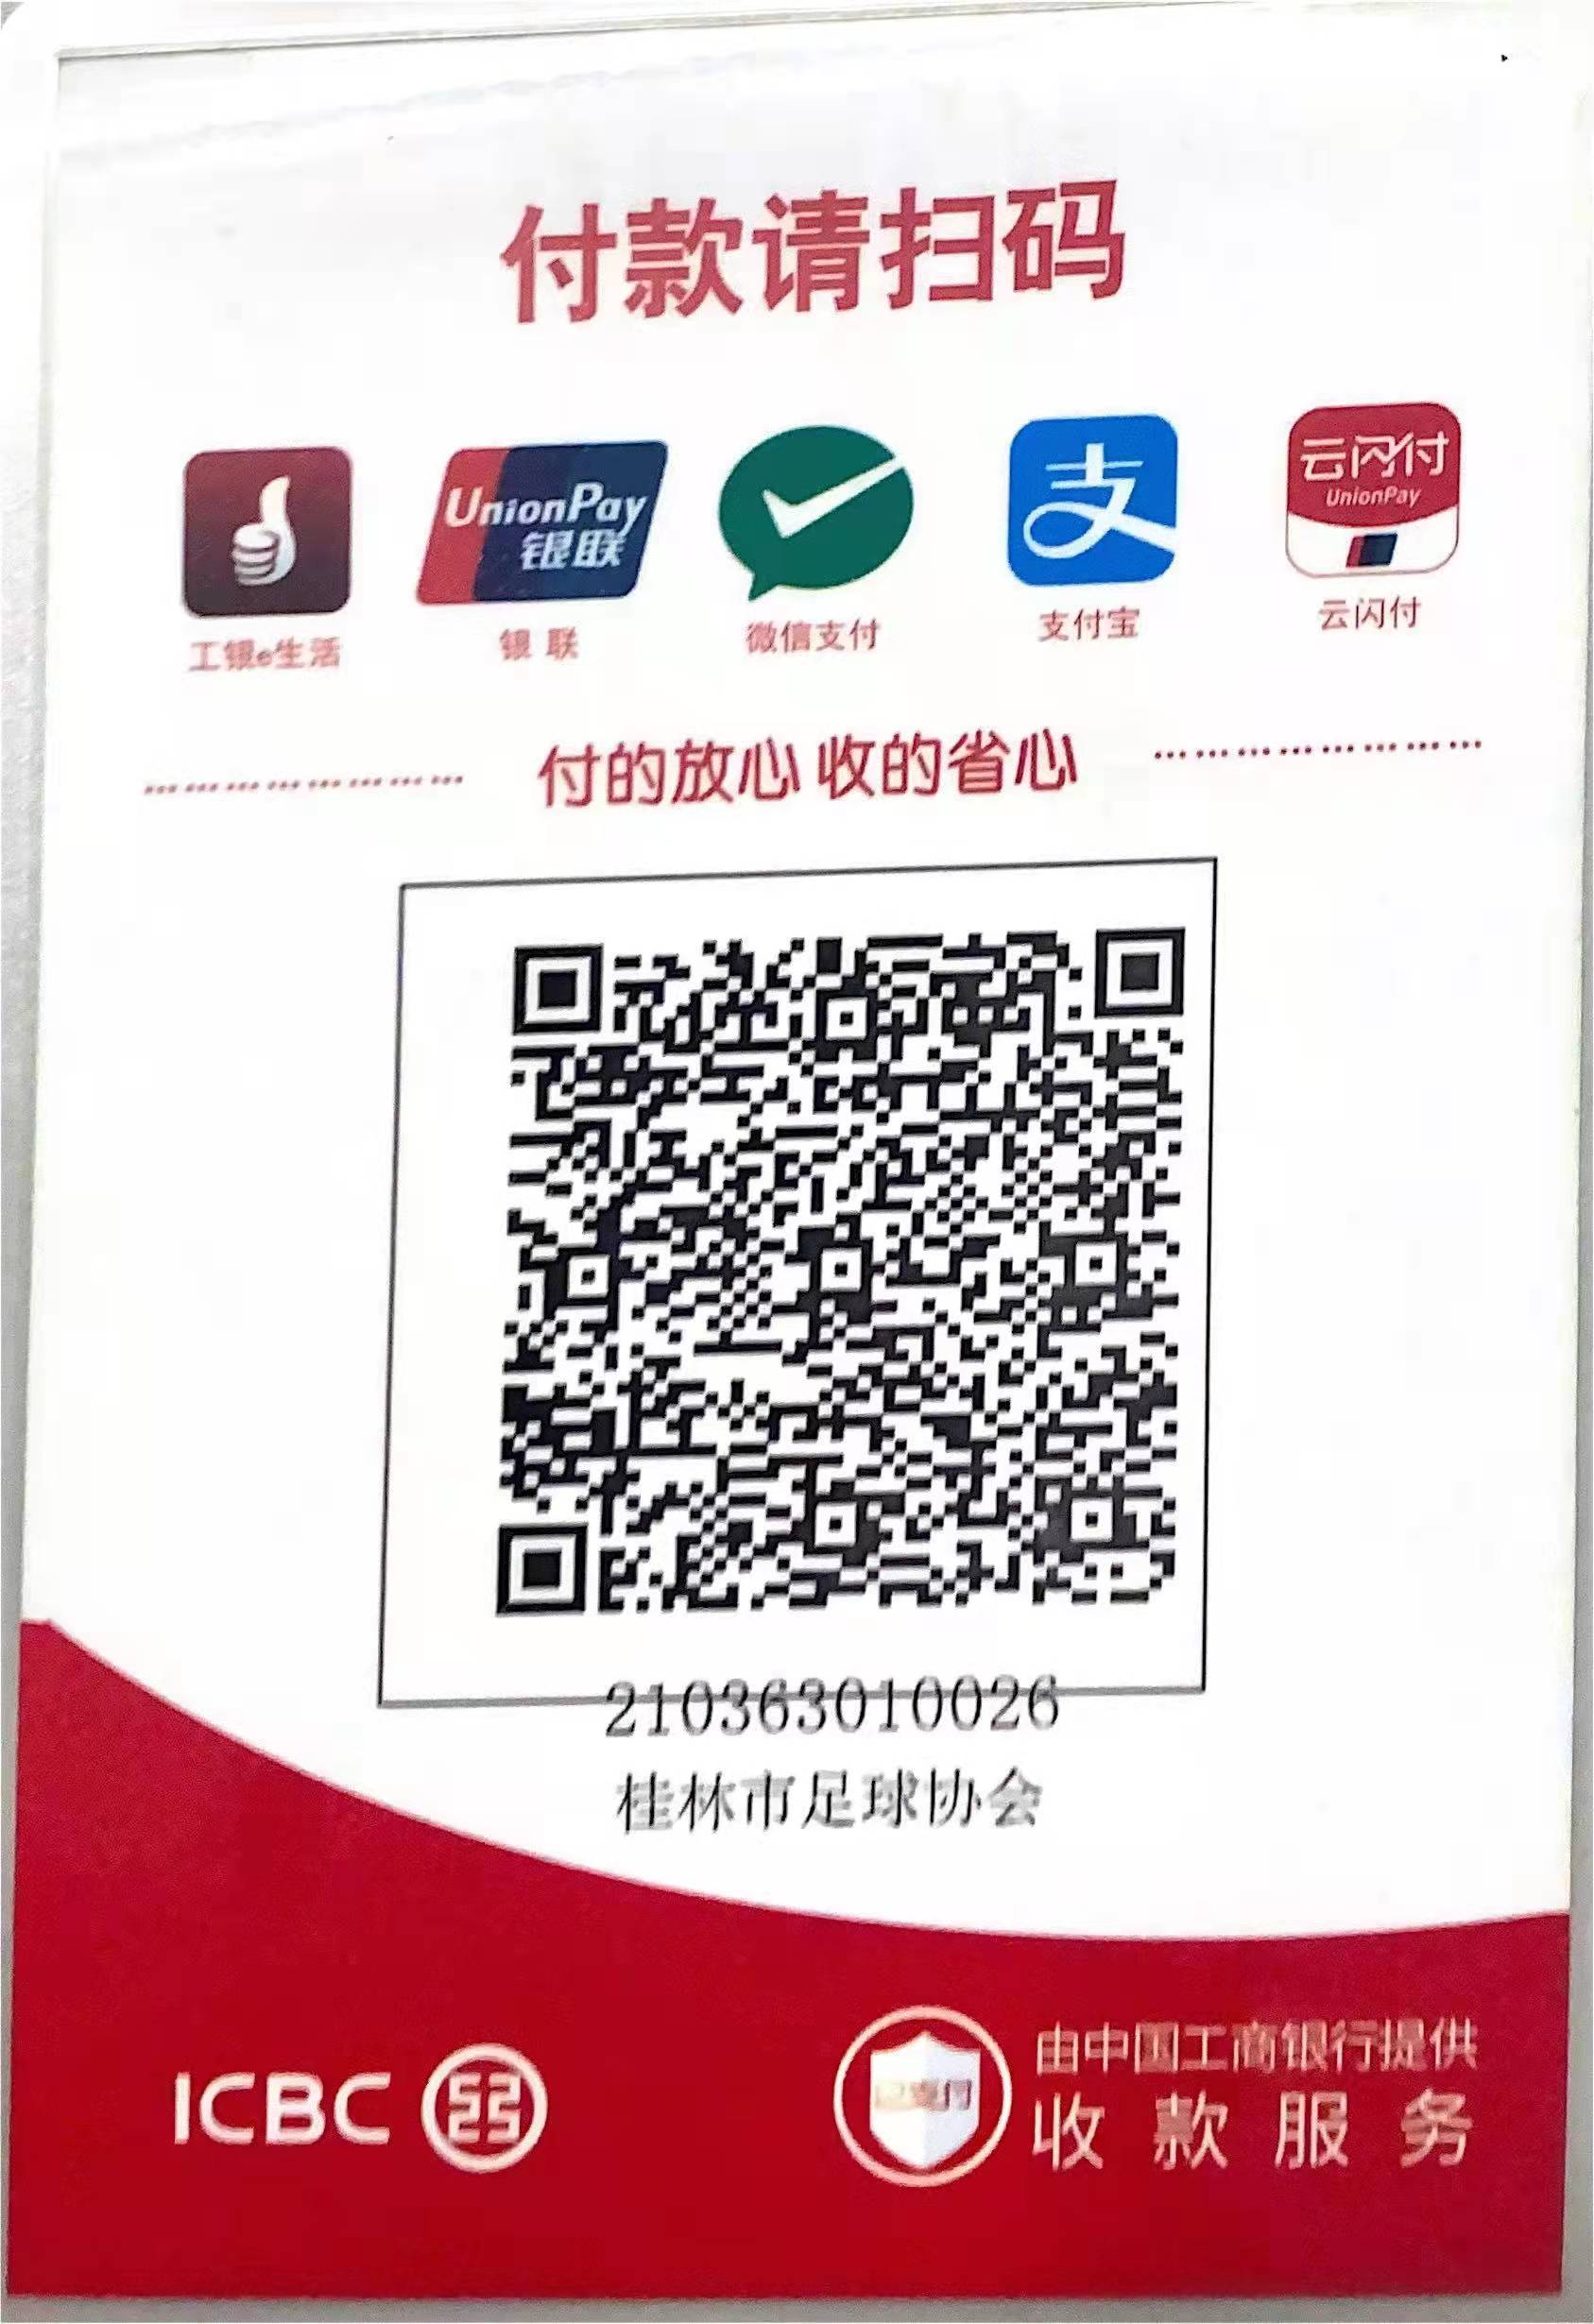 桂林市足球协会收款码